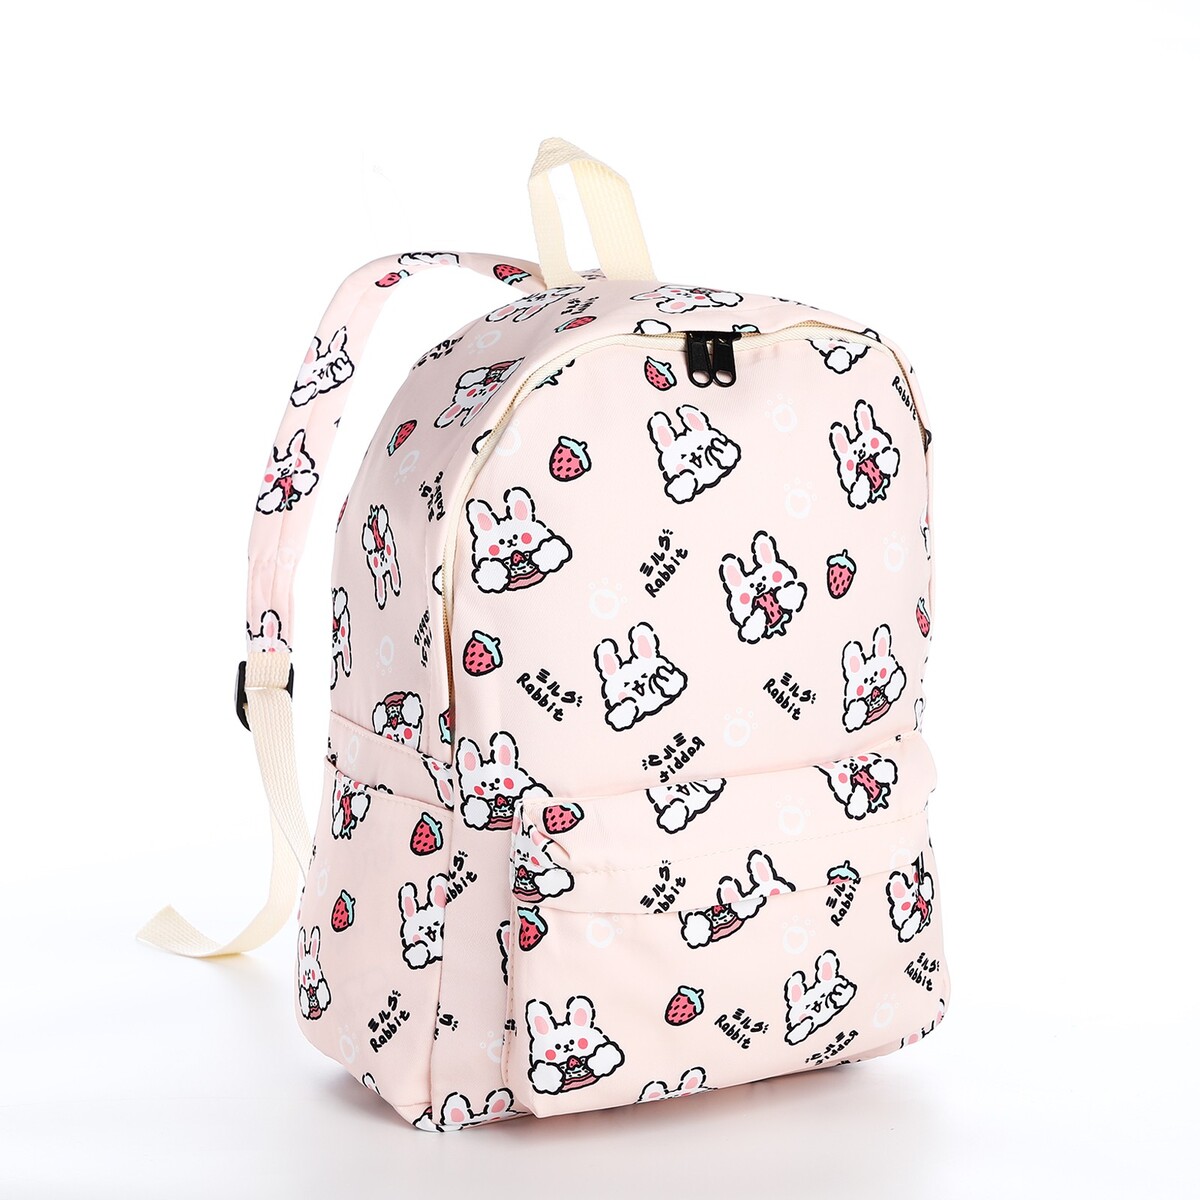 Рюкзак школьный из текстиля на молнии, 3 кармана, цвет бежевый/розовый